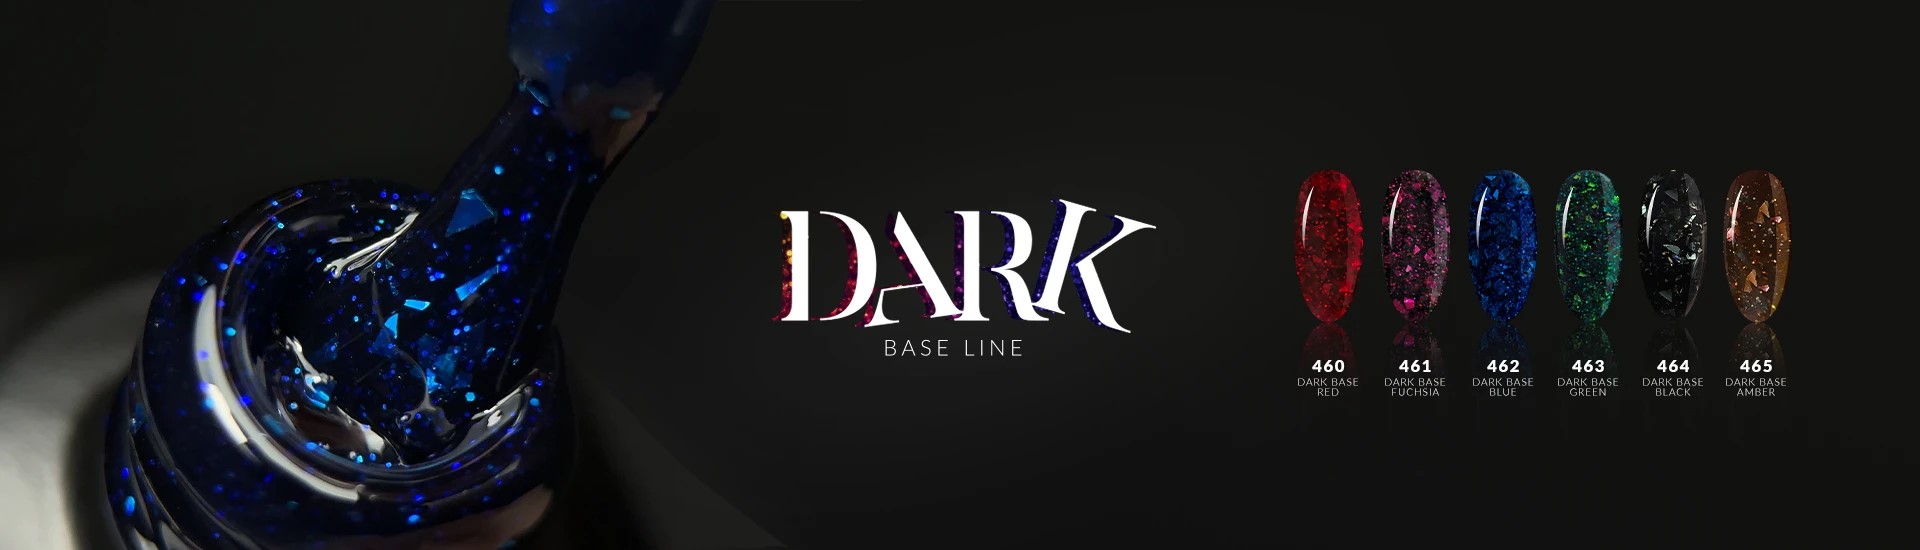 Dark Base Cover Line - Colour Fashion Block